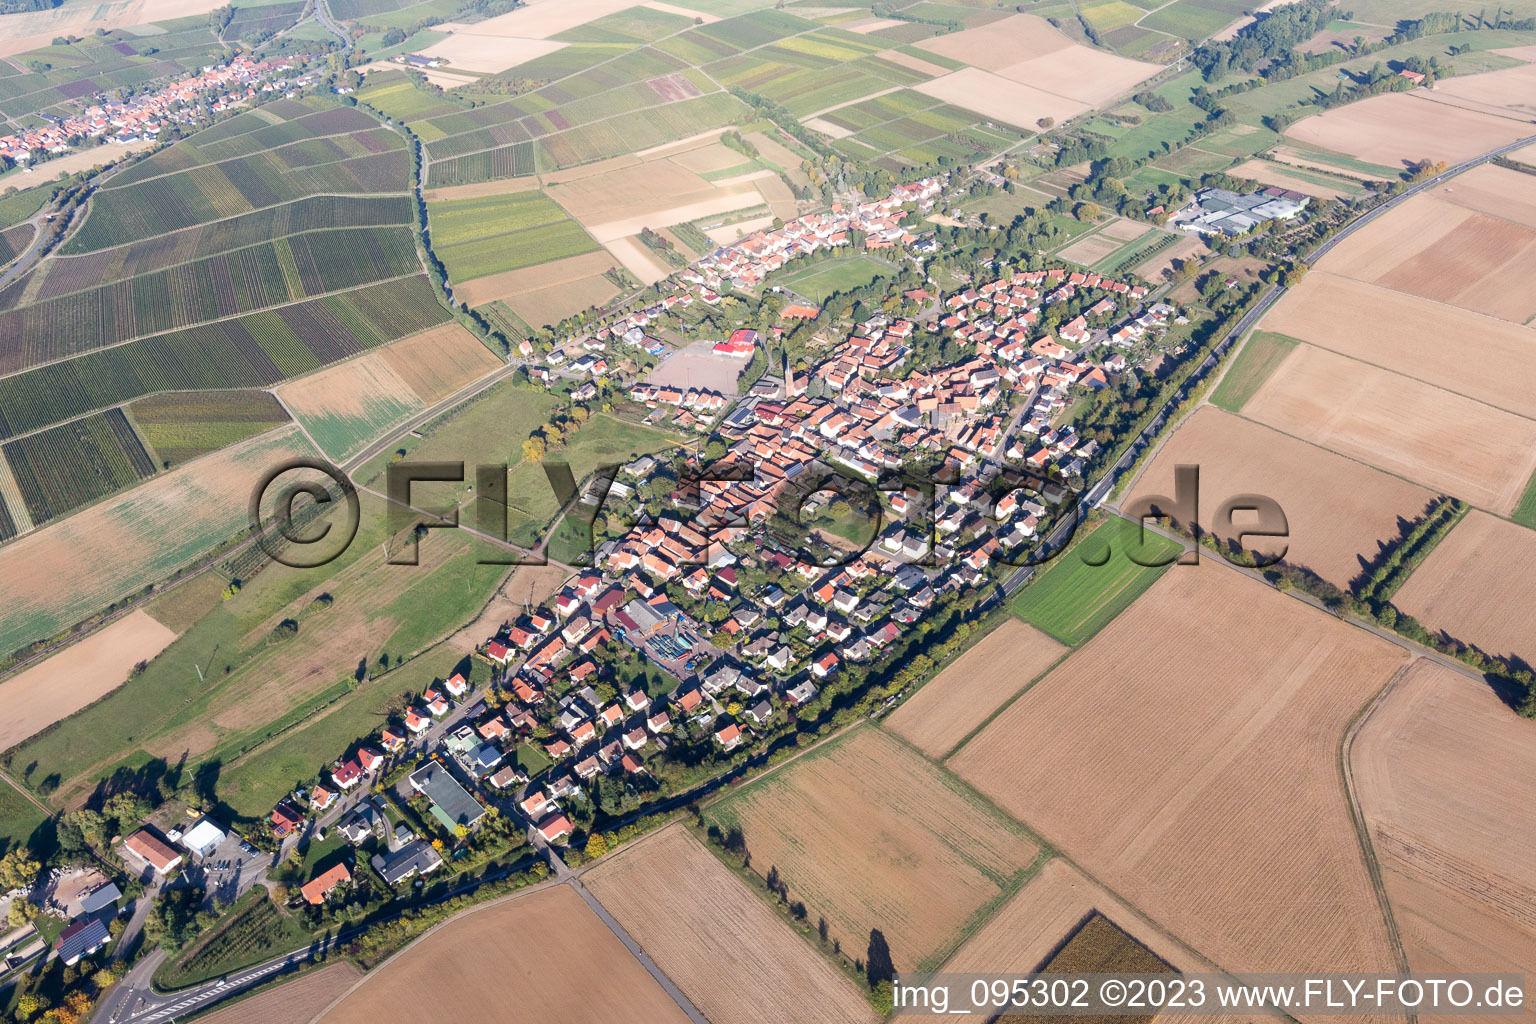 Quartier Kapellen in Kapellen-Drusweiler dans le département Rhénanie-Palatinat, Allemagne vue d'en haut